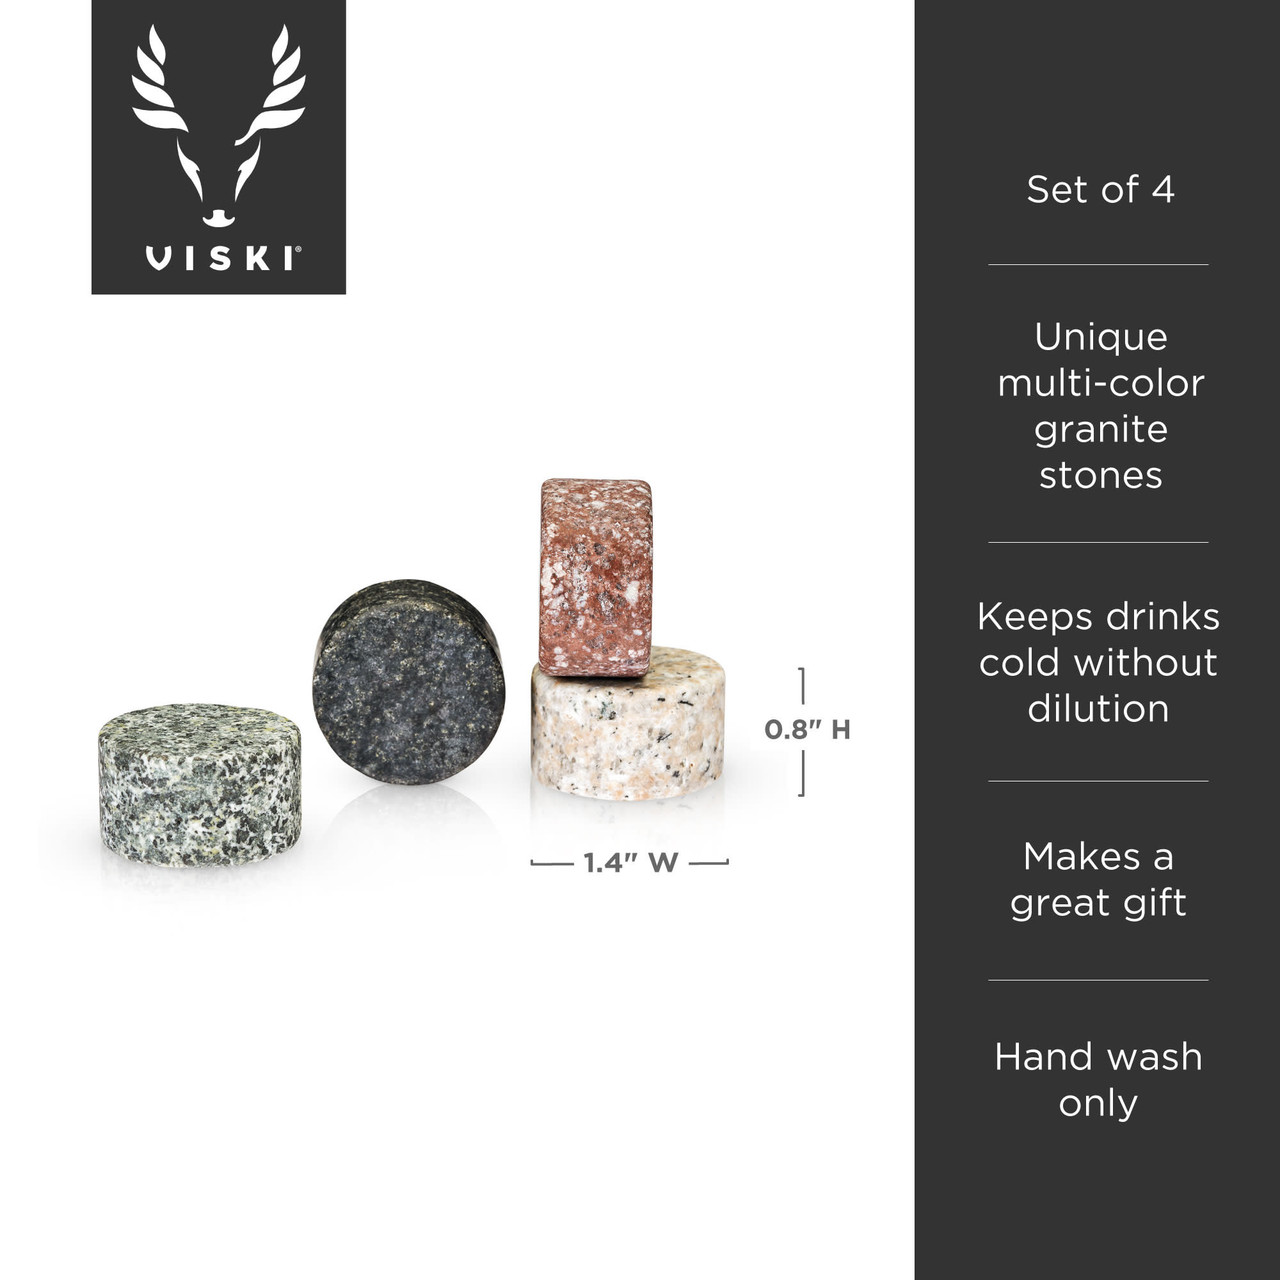 Glacier Rocks® Multi-Color Granite Stones by Viski®